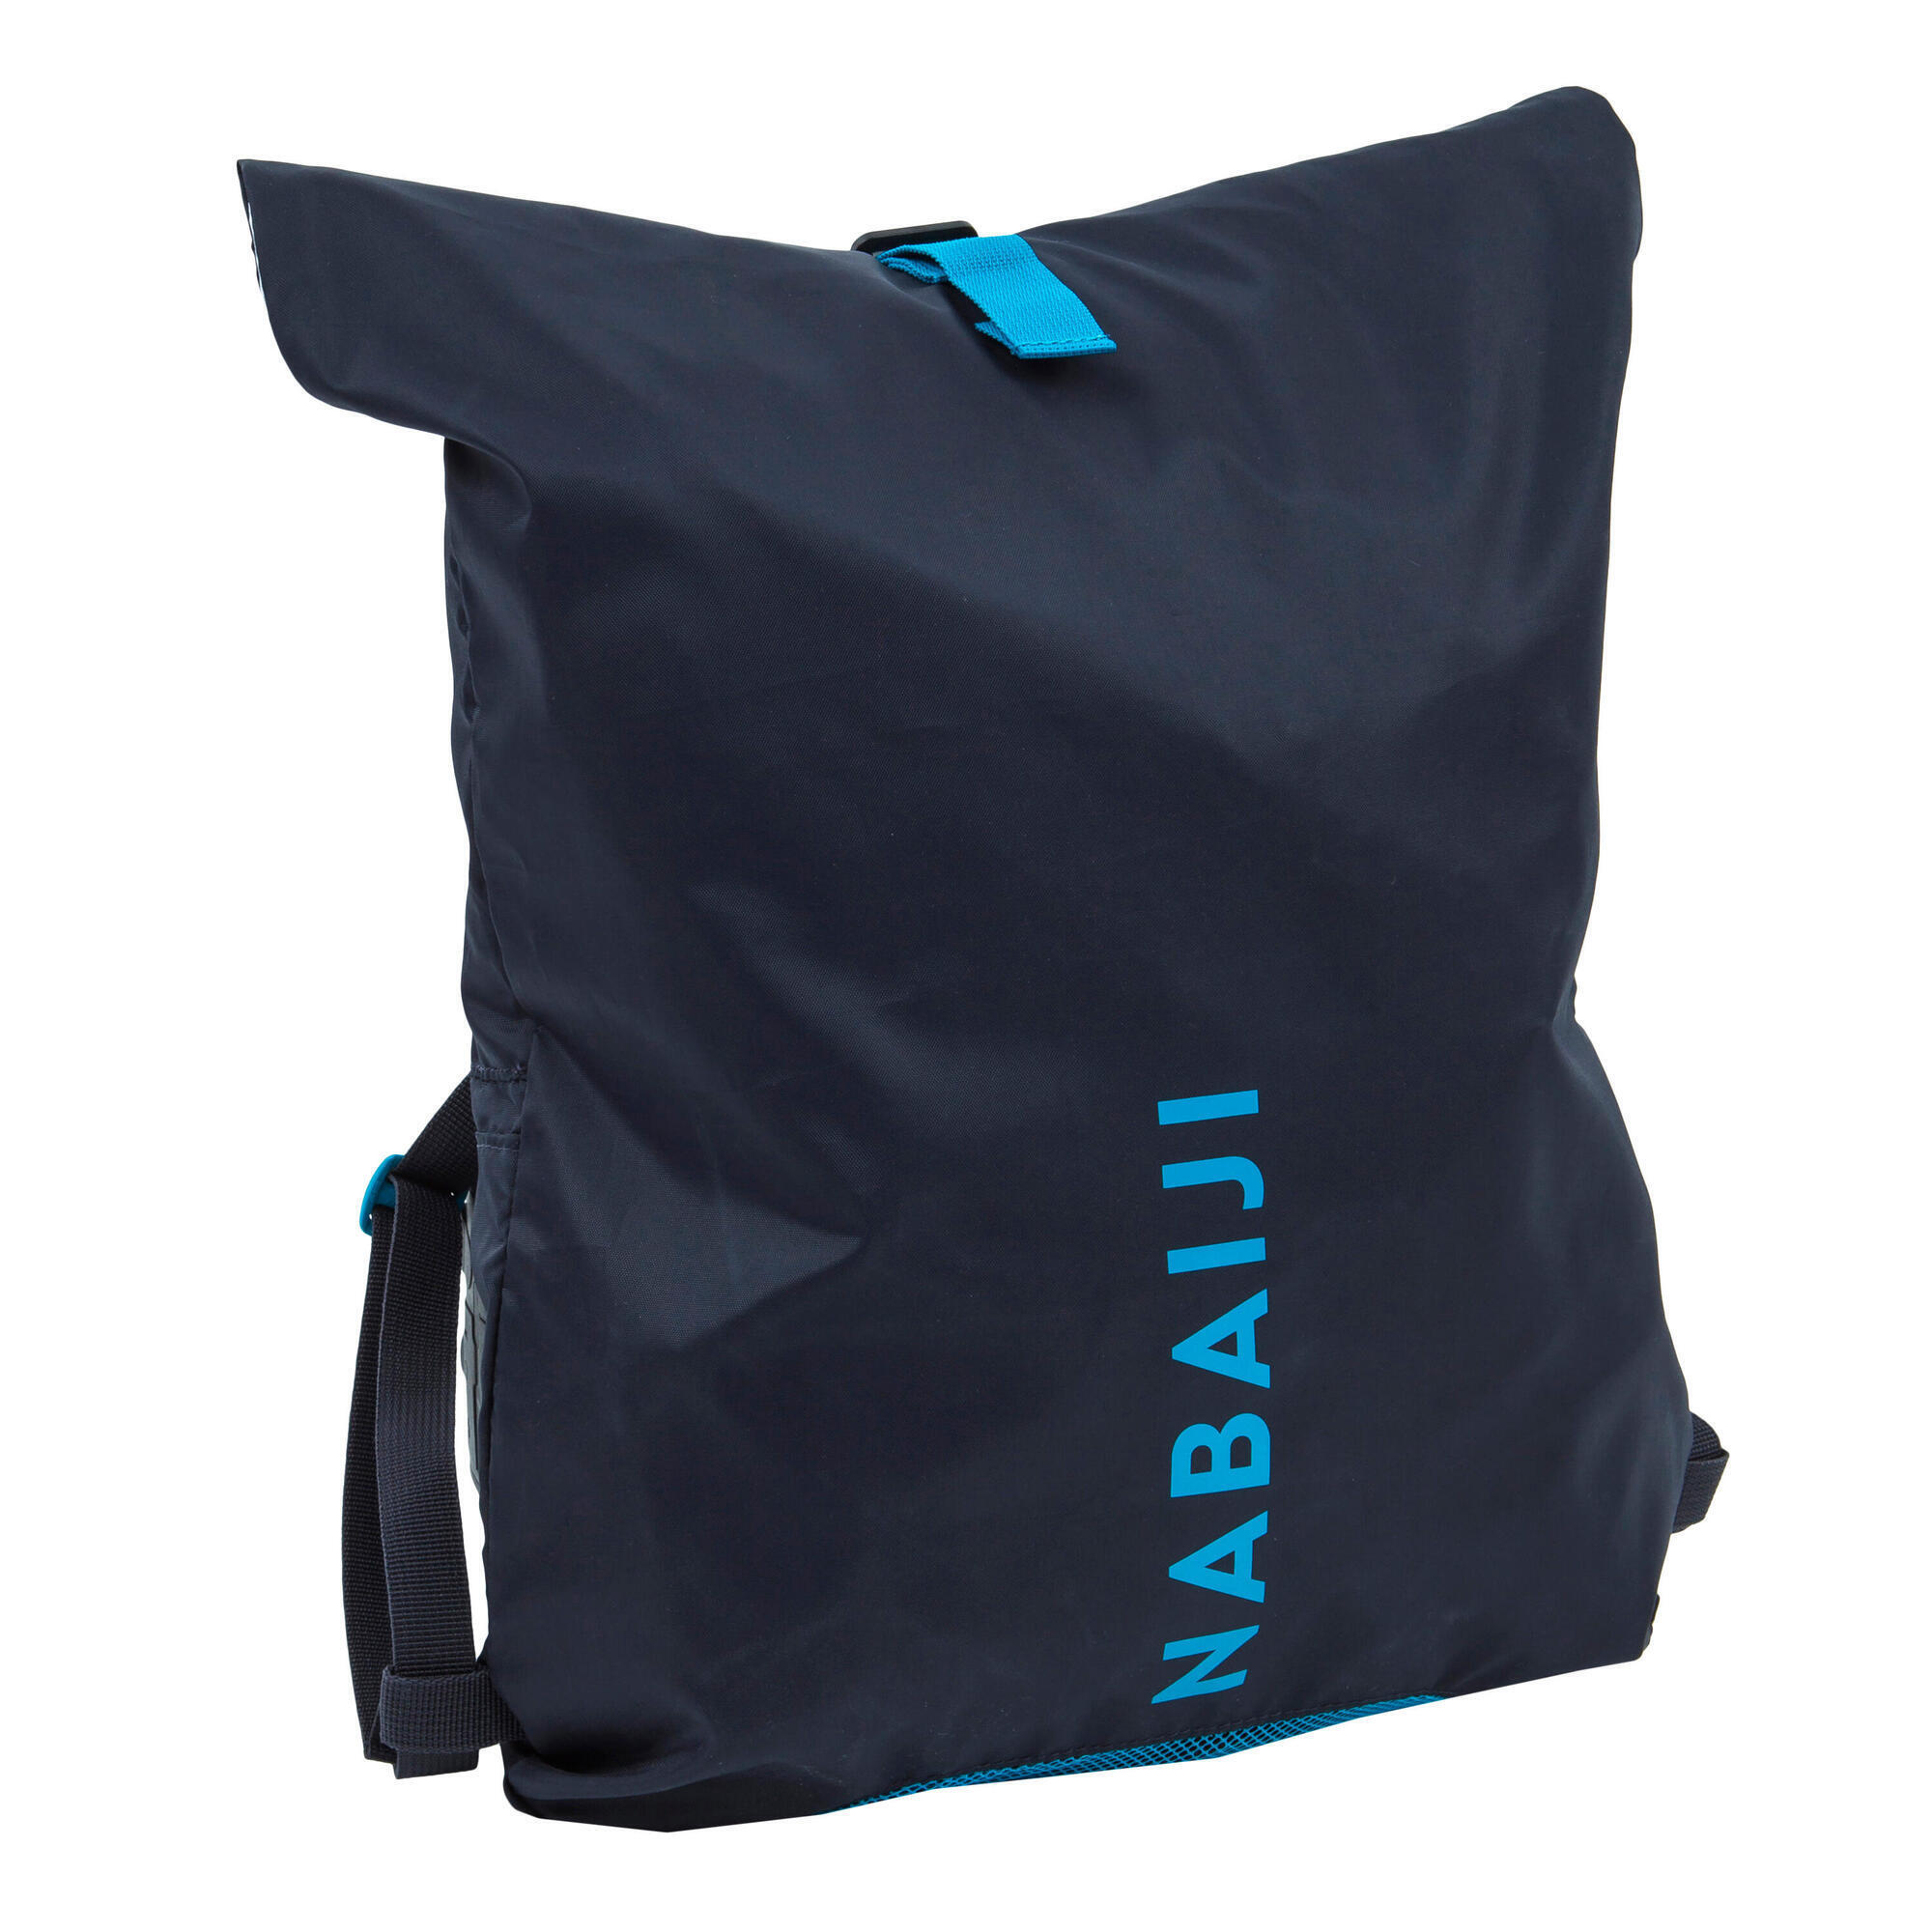 Sac de natation Sunbeter sac de gymnastique séché humide à grande capacité Sac de plage imperméable à leau de grande capacité Sac de plage pour les enfants et les adultes 